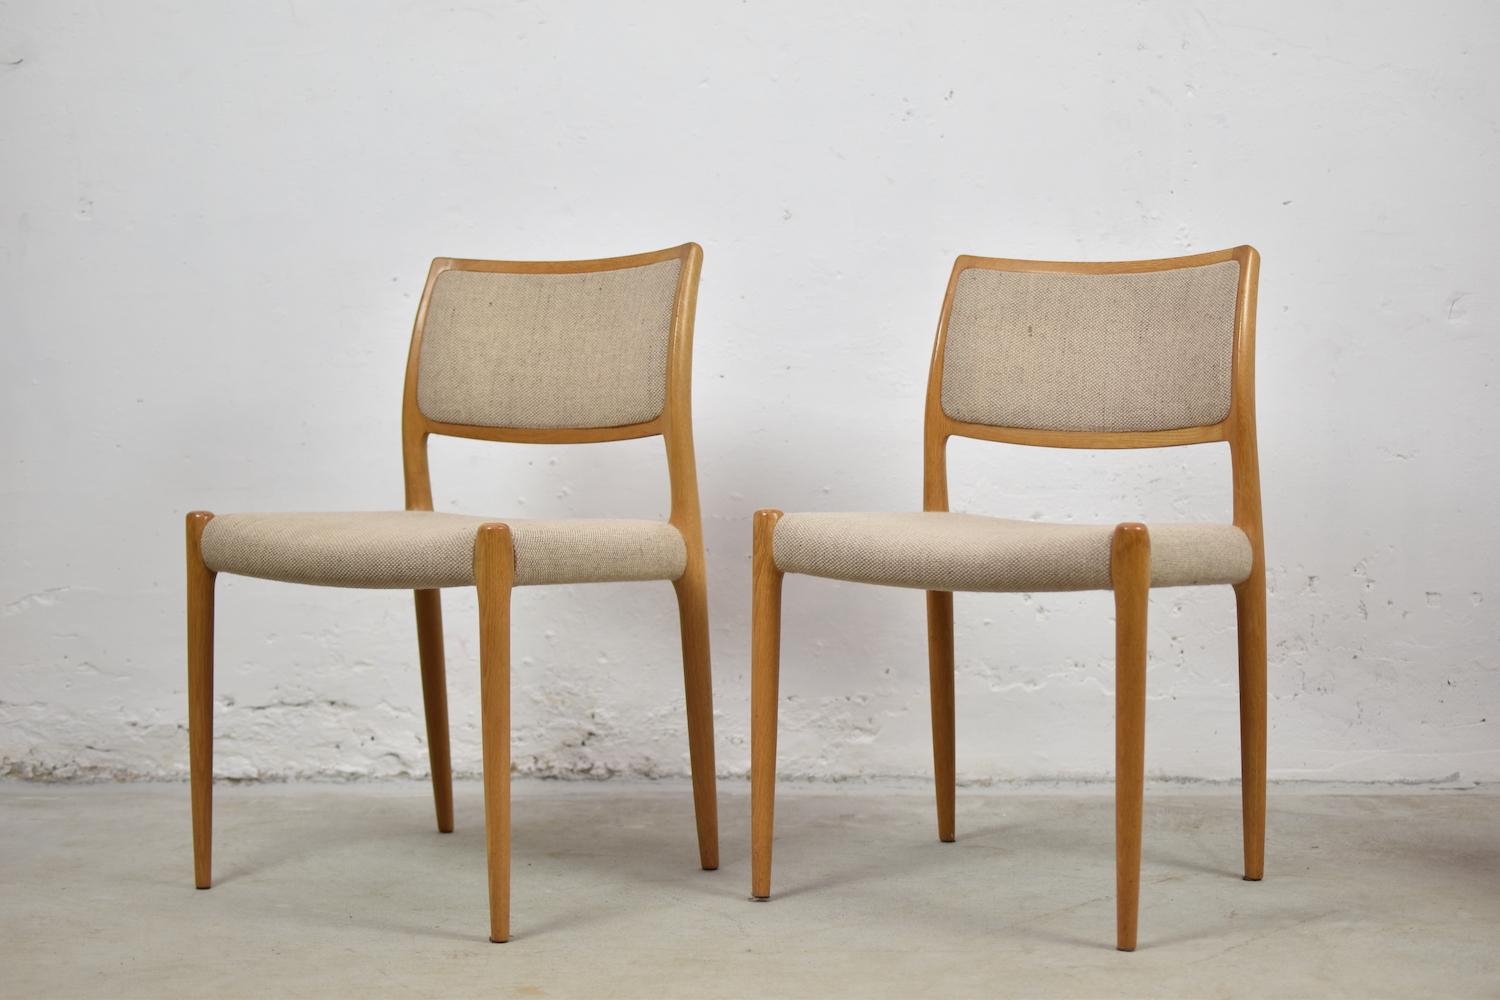 Scandinavian Modern Model 80 Chairs by Niels Otto Møller for J.L.Møllers Mobelfabrik, Denmark, 1950s